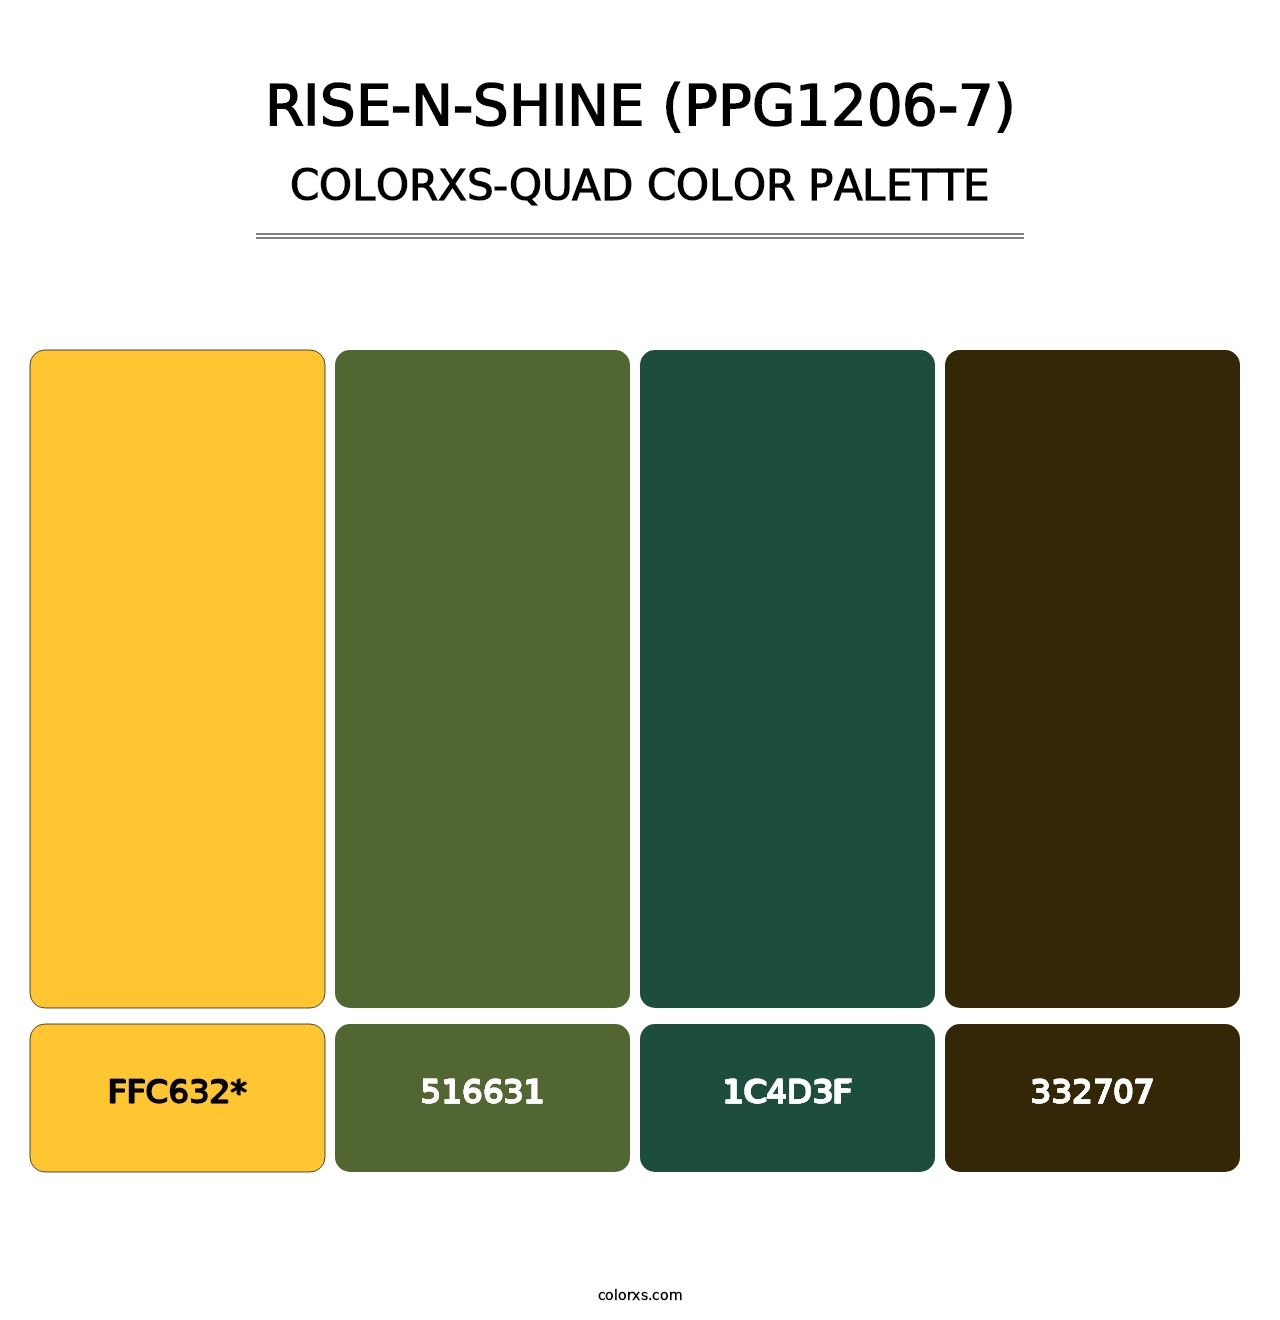 Rise-N-Shine (PPG1206-7) - Colorxs Quad Palette